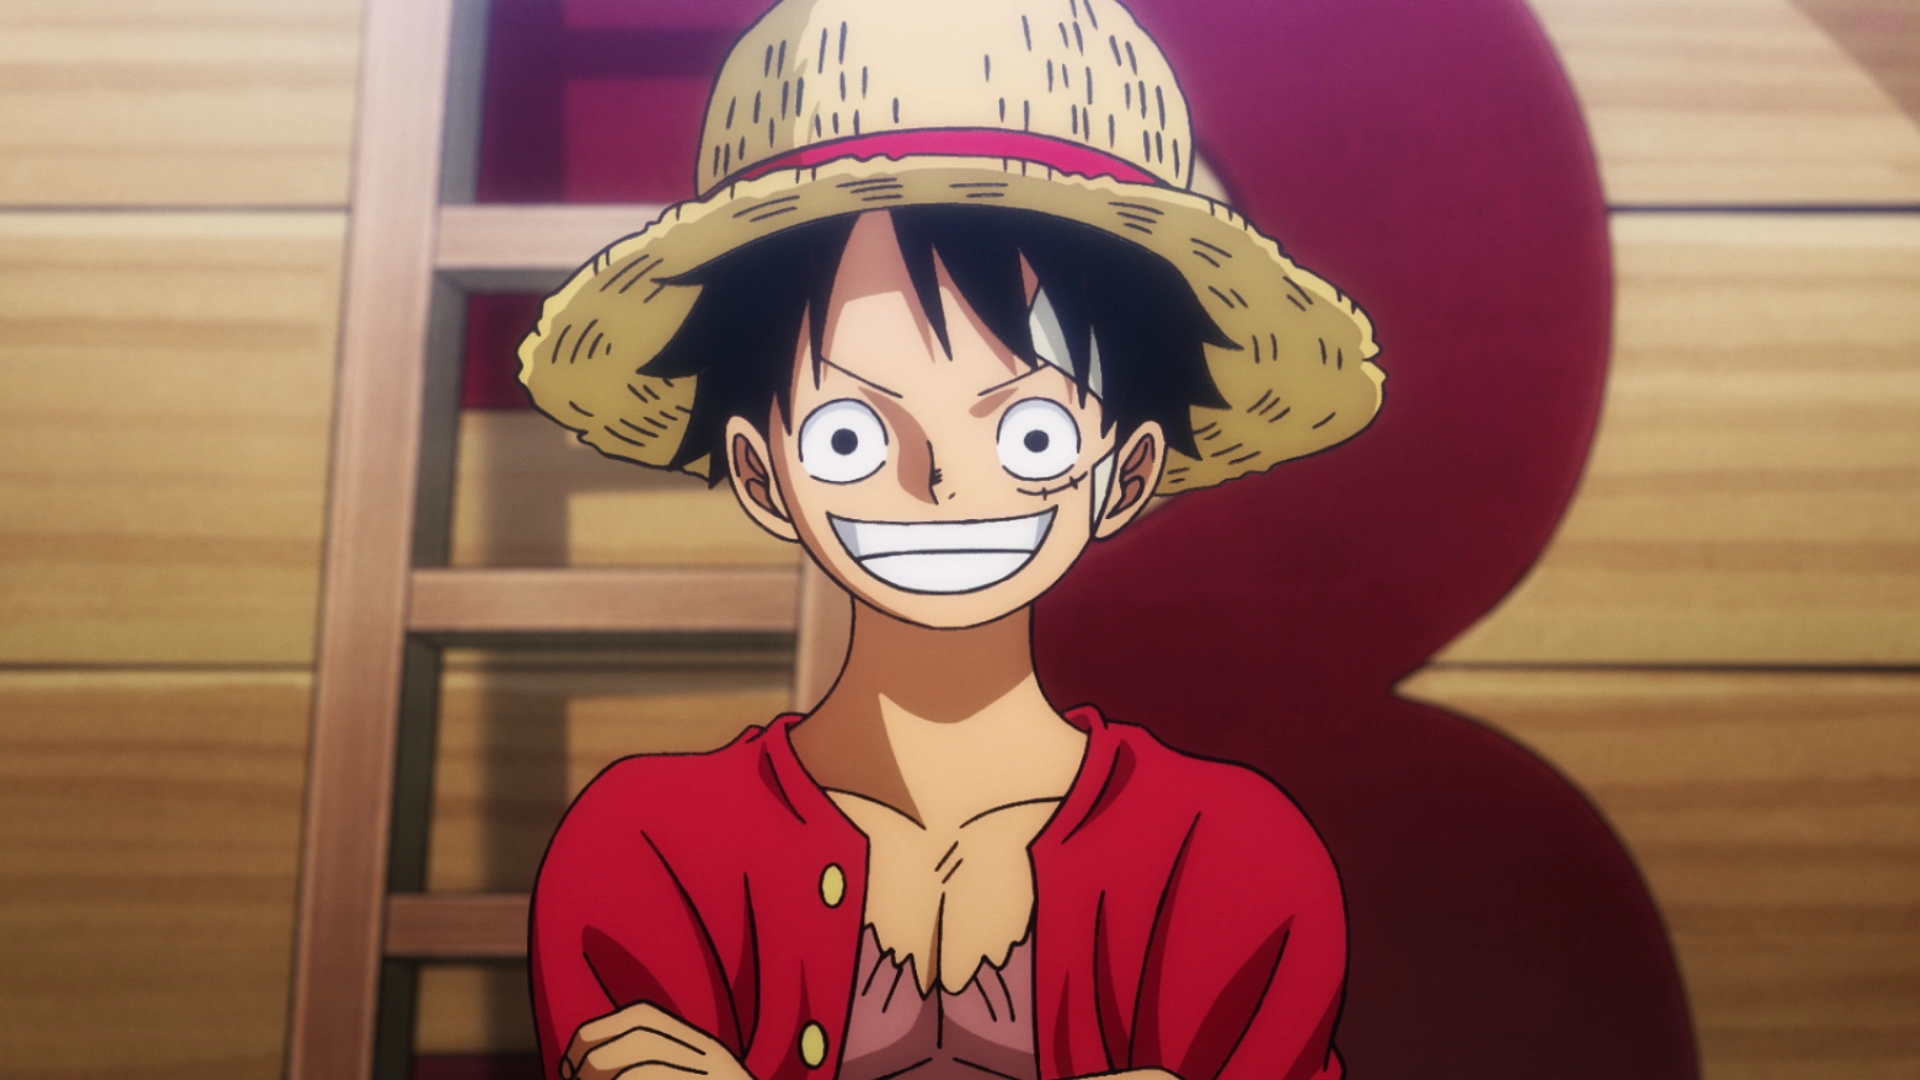 Minaturka 1084 odcinka One Piece